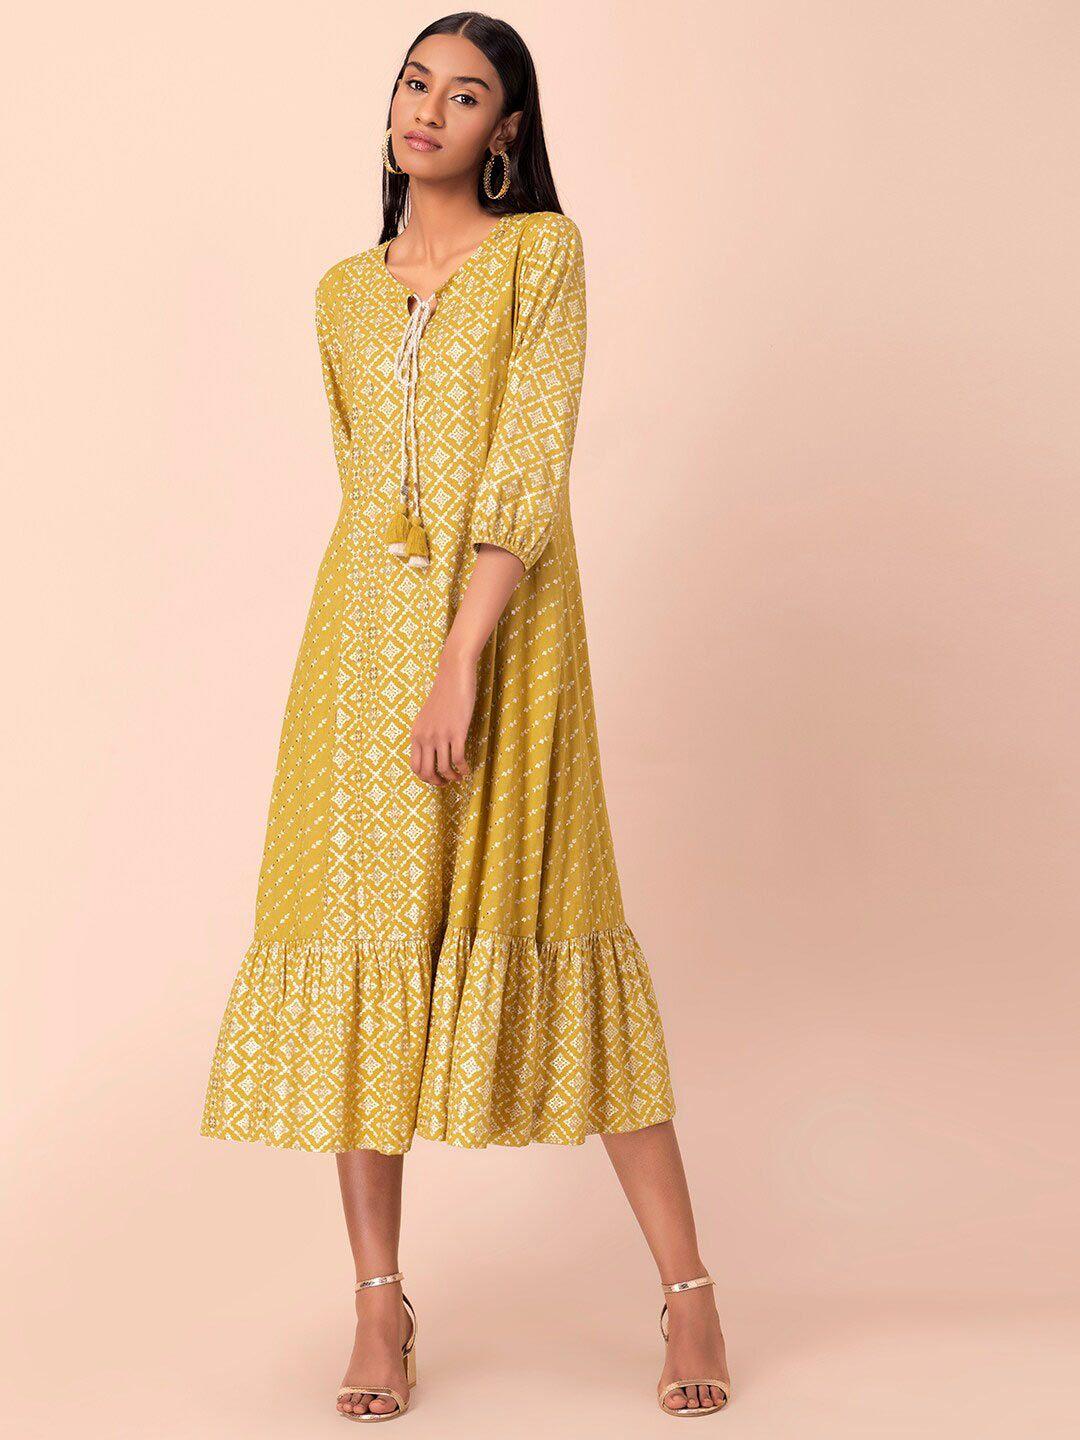 rang-by-indya-yellow-&-white-a-line-midi-dress